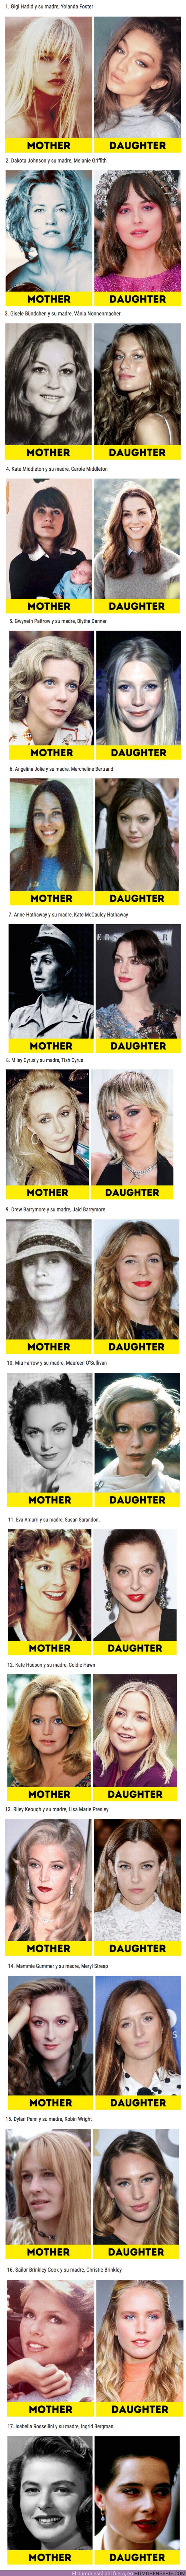 50146 - GALERÍA: Comparación entre famosas y sus madres cuando tenían la misma edad